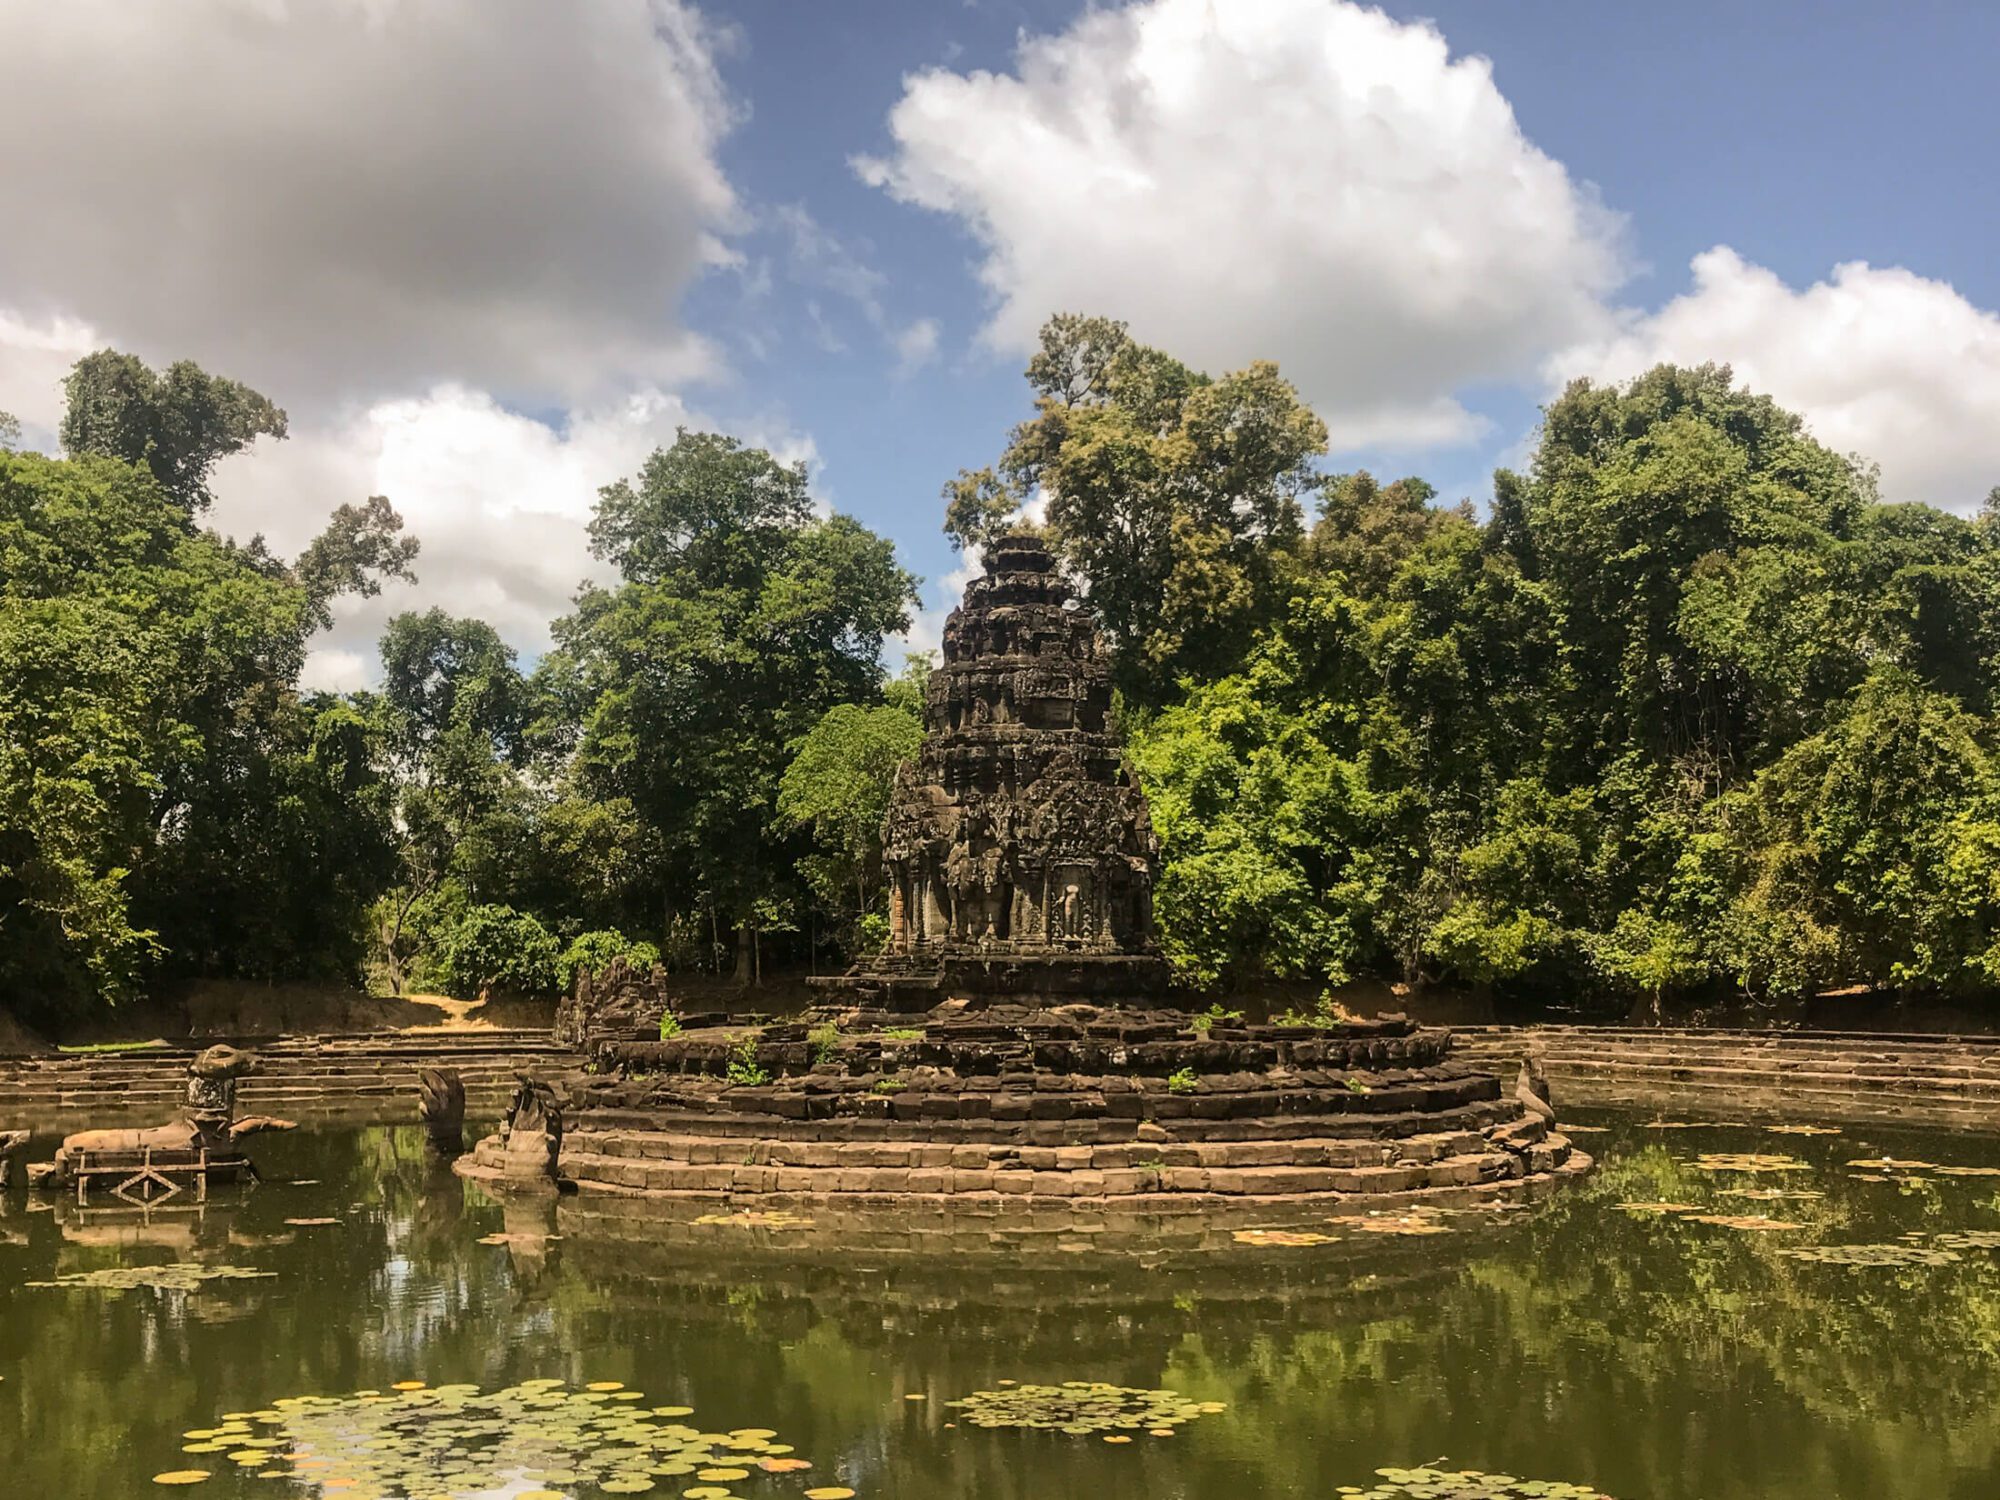 Neak Pean​ temple in Angkor